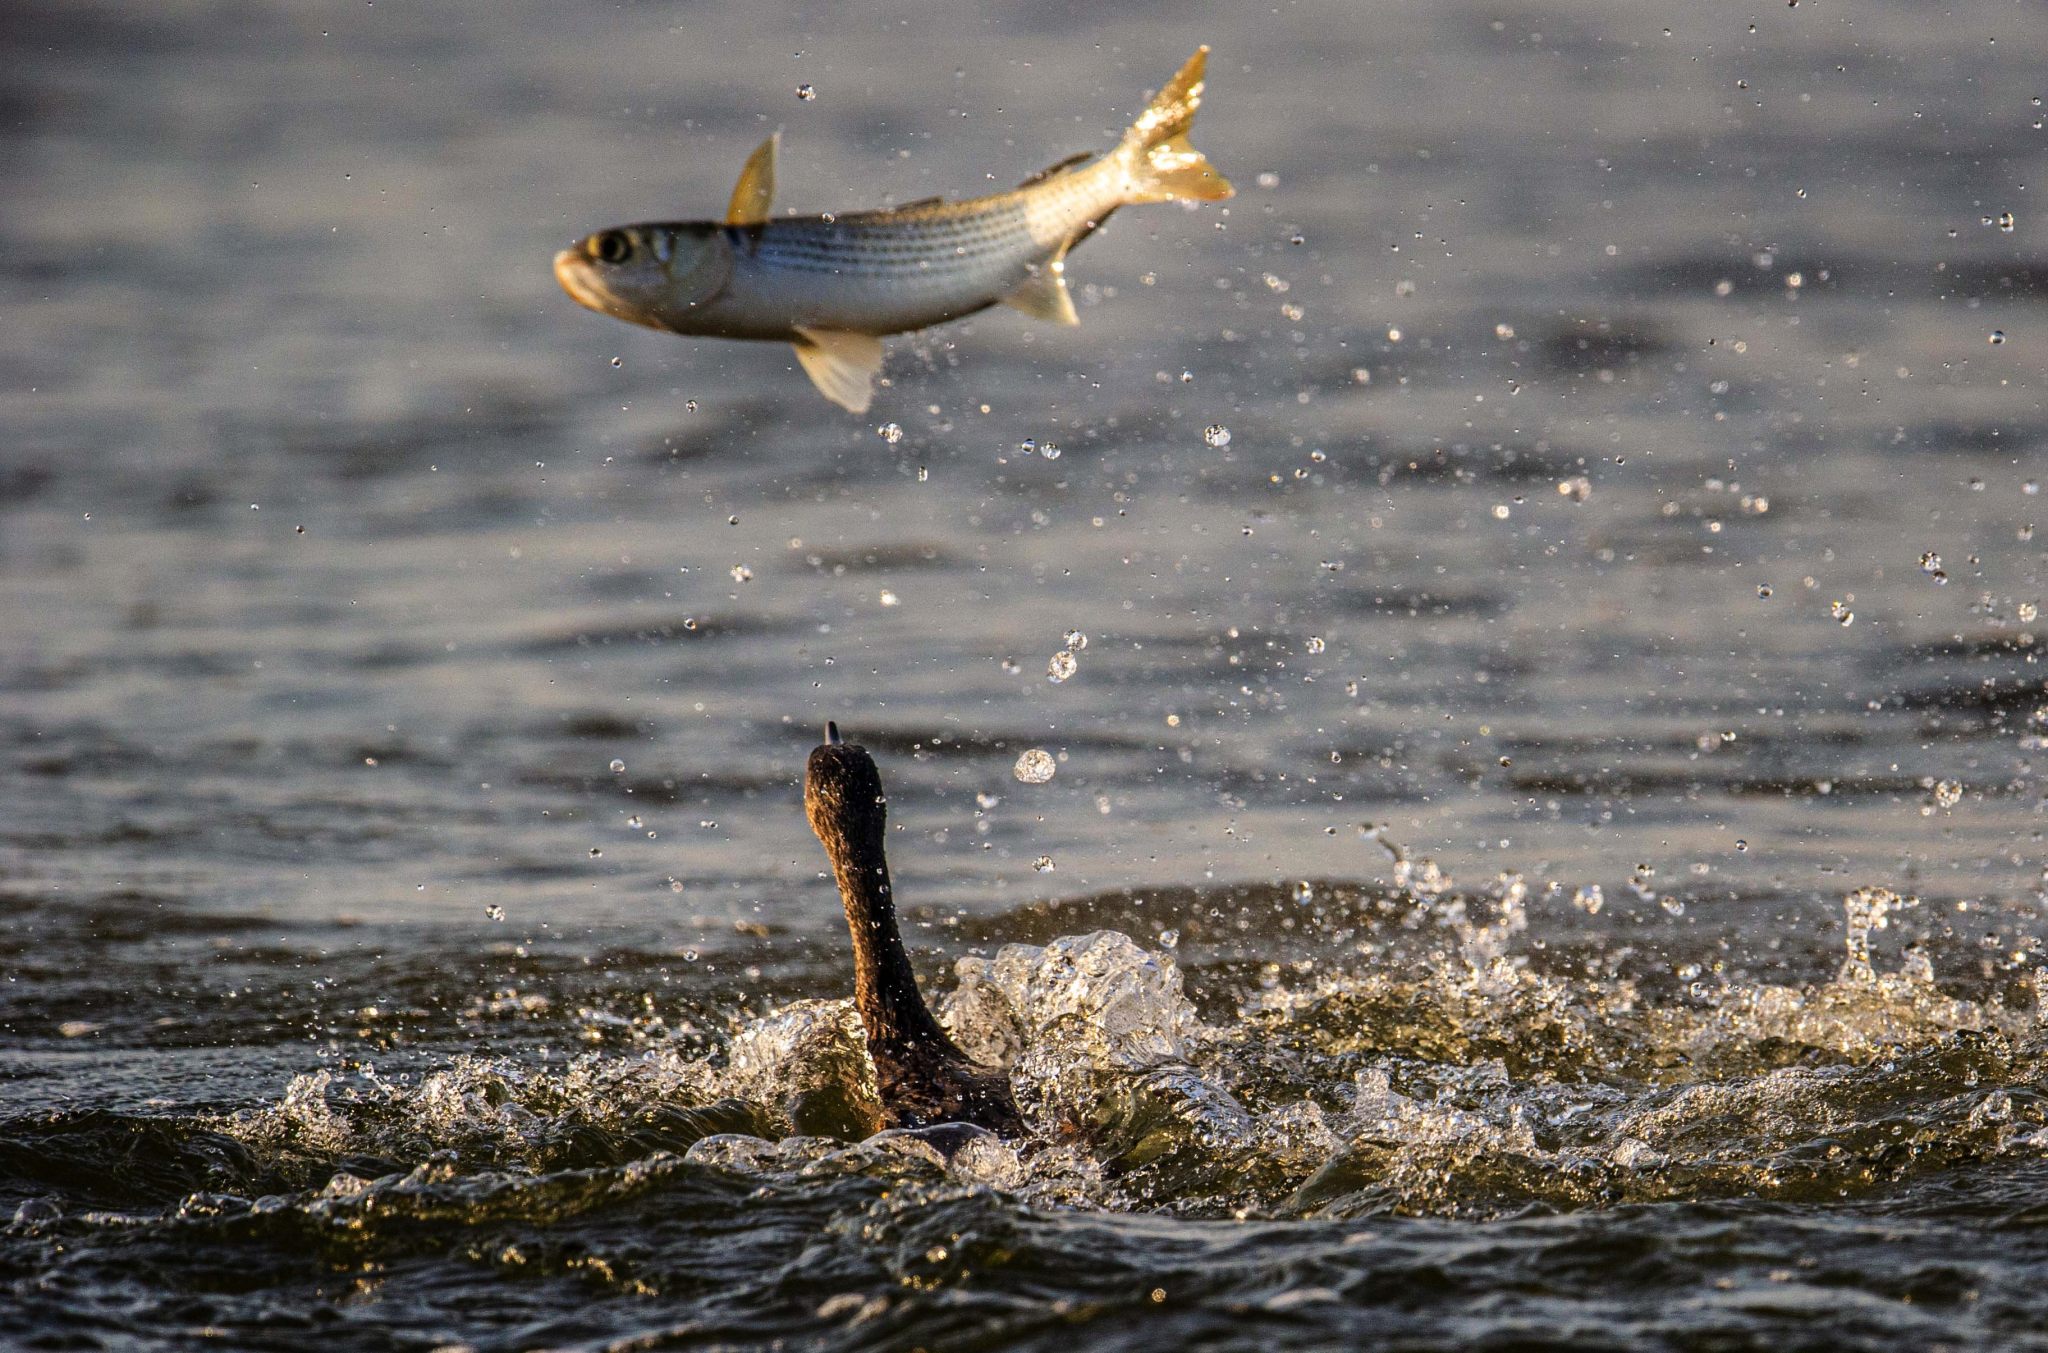 跳起水面的鱼都是被鸬鹚铁钩一样嘴咬伤,疼痛地跃出水面,一般来说很难